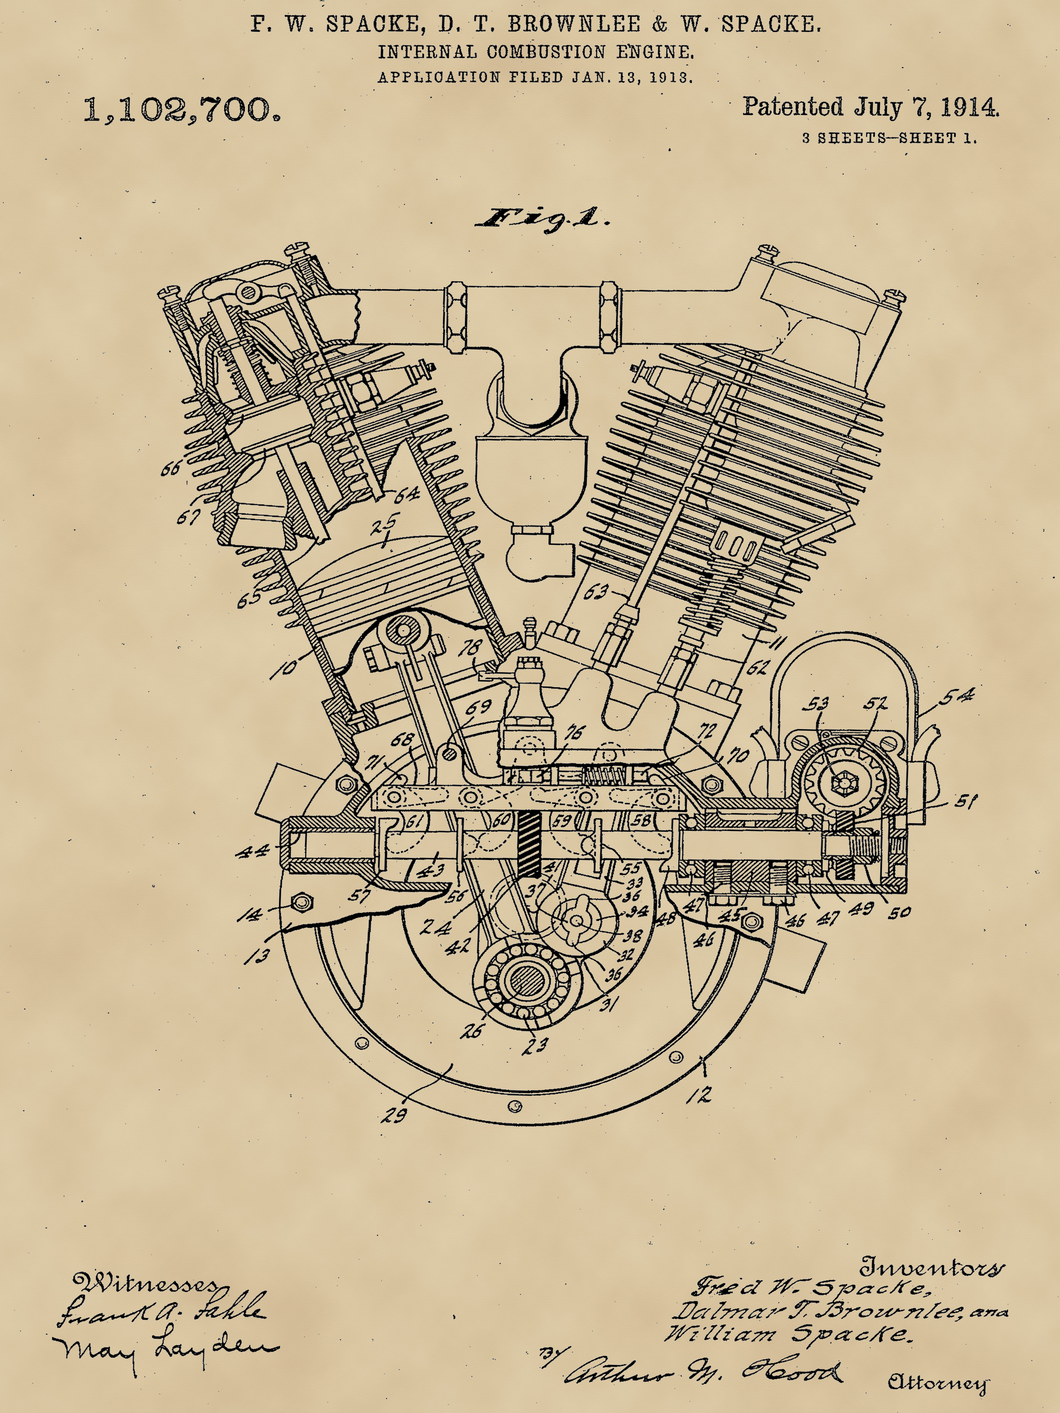 Motor vintage, industrial stílusú poszter, 1914-es amerikai szabadalmi rajz alapján